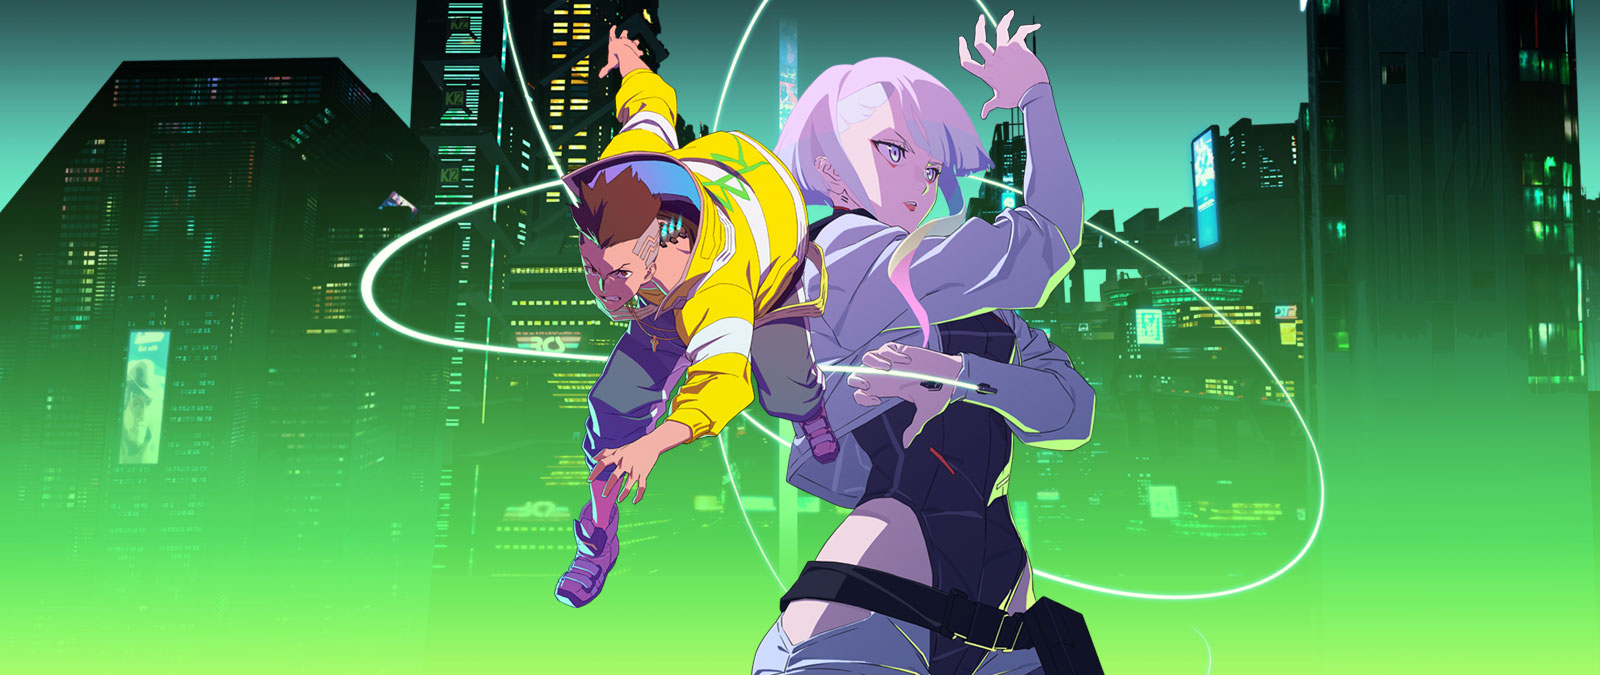 Două personaje anime prezintă midair în Night City